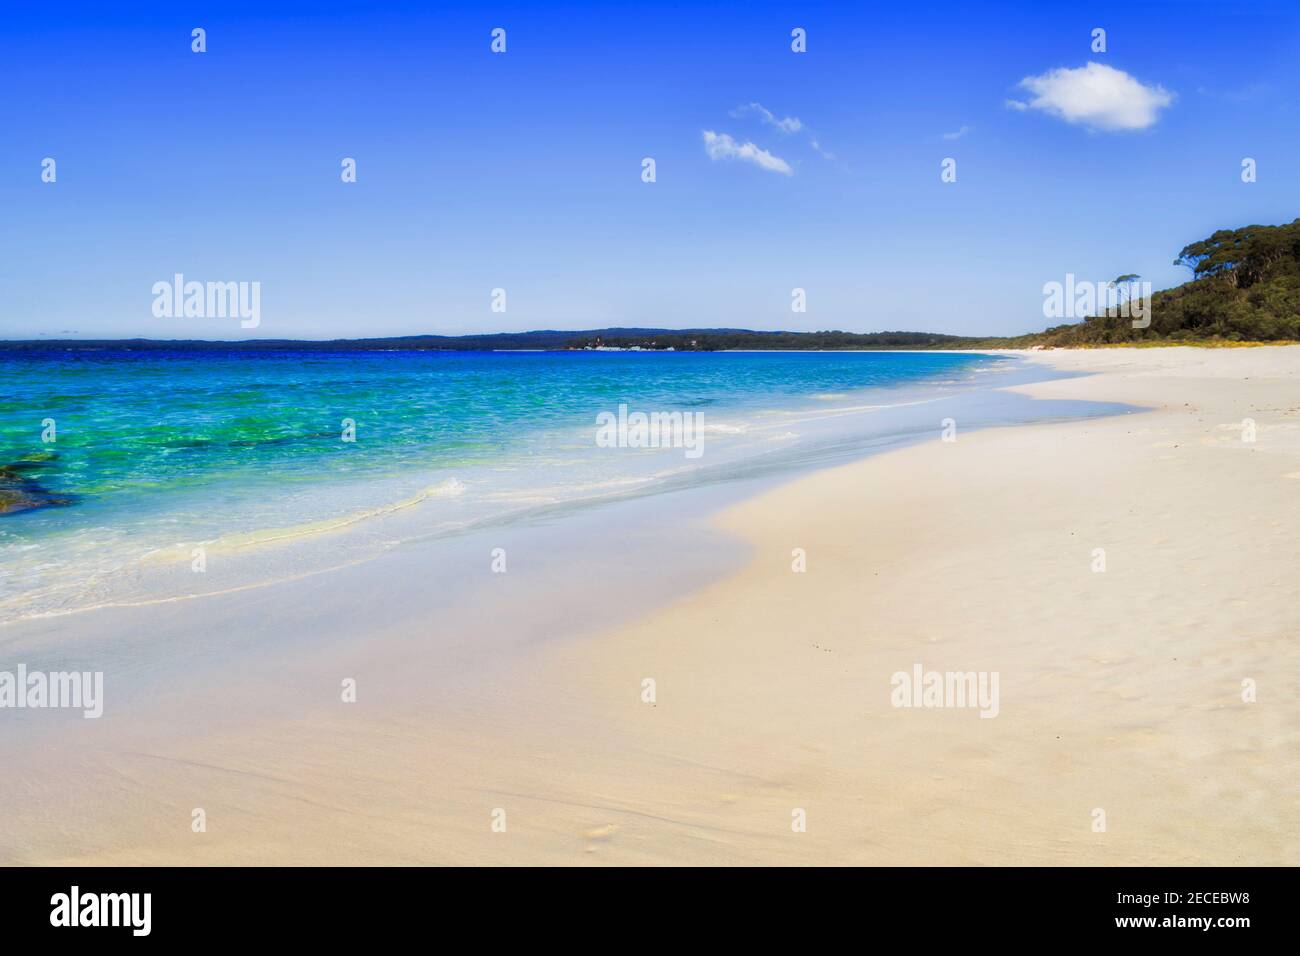 Immacolata sabbia bianca della spiaggia di Hyams nella zona della baia di Jervis dell'Australia - dune di sabbia lungo la costa del Pacifico. Foto Stock